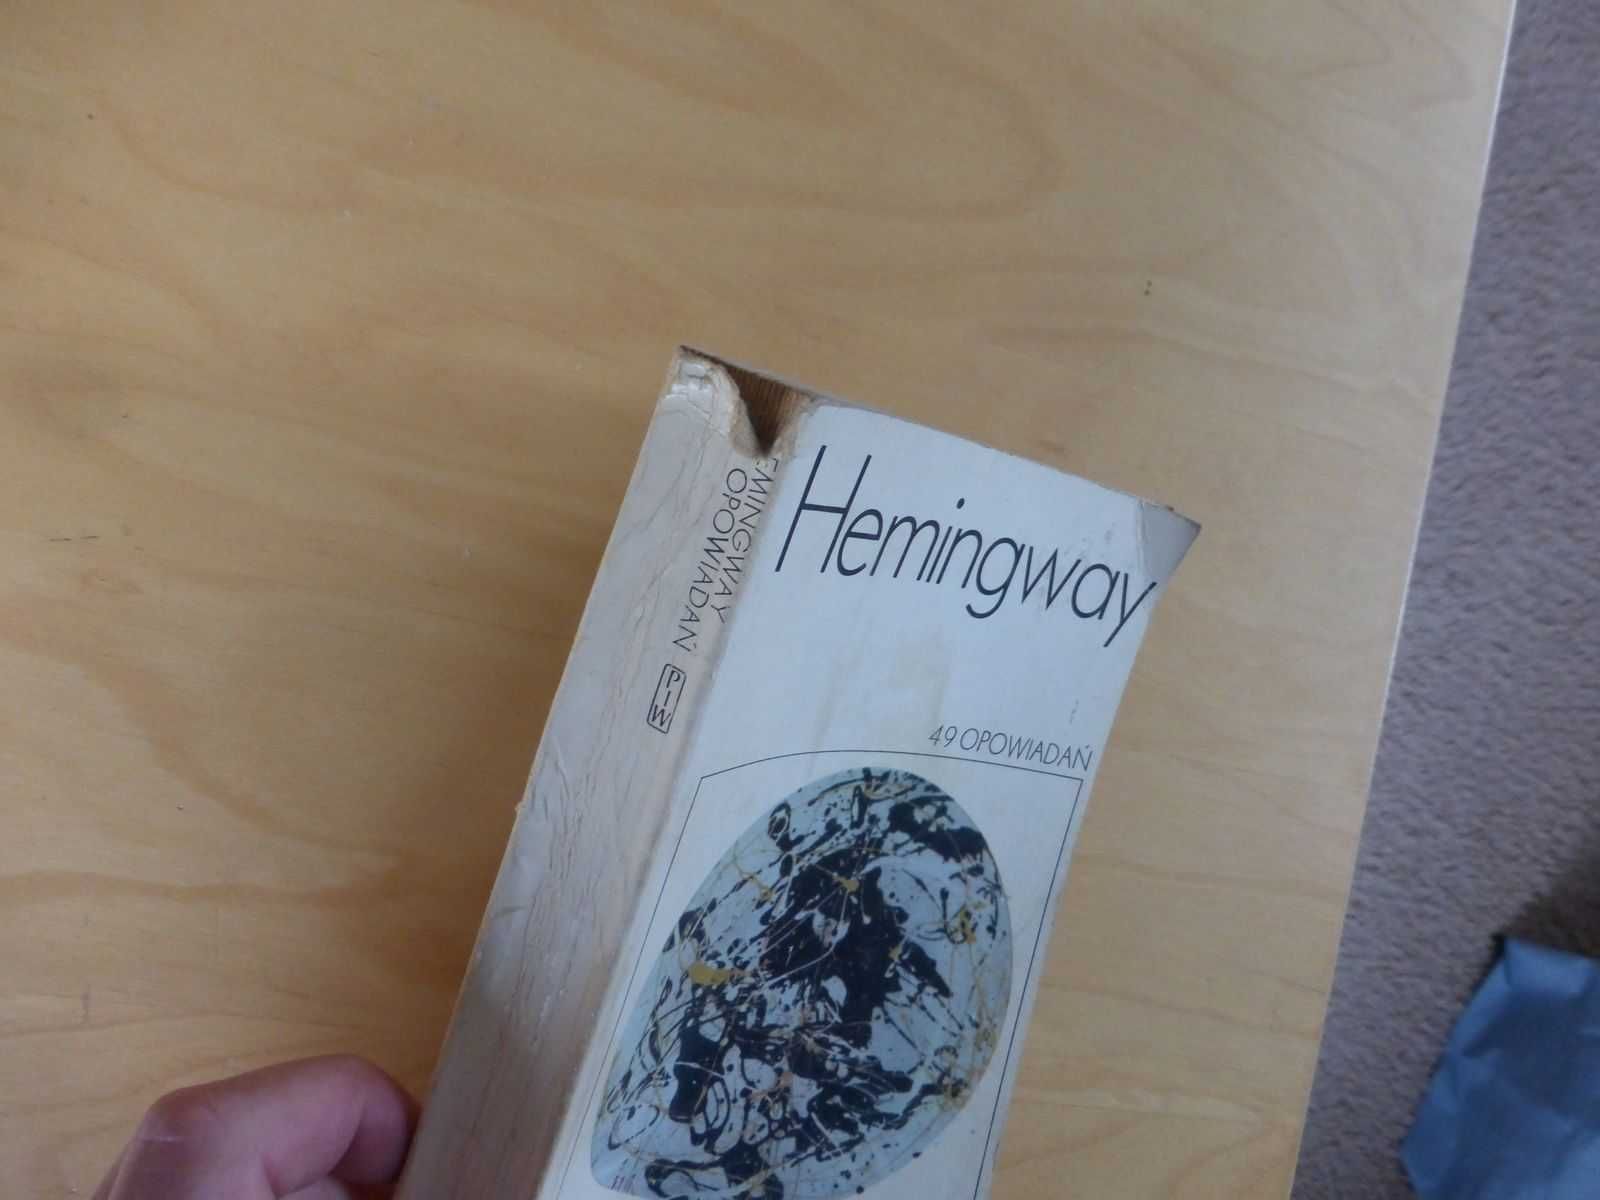 49 opowiadań. Ernest Hemingway. PIW 1965 PRL